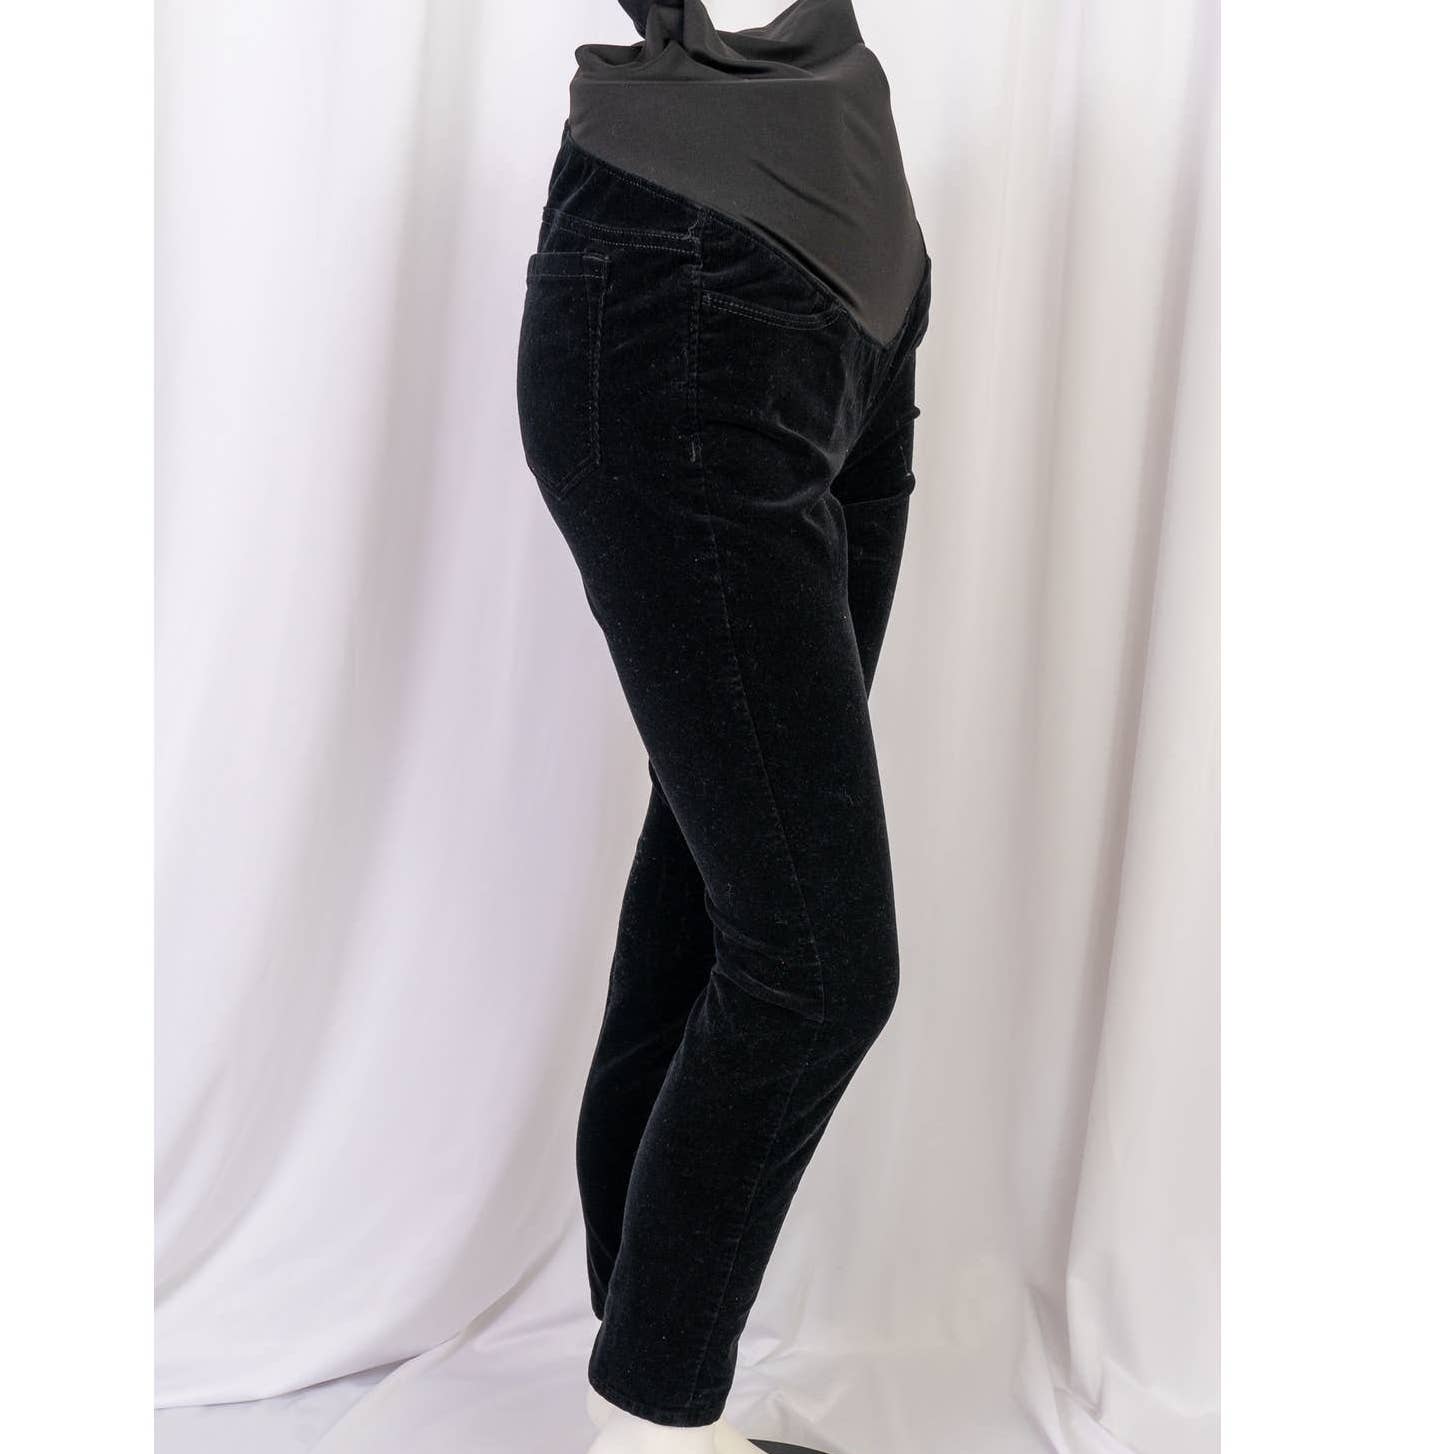 Loft Womens Cozy Denim Legging Jeans Size 25 / 0 Petite NWT Dark Wash Ann  Taylor | eBay